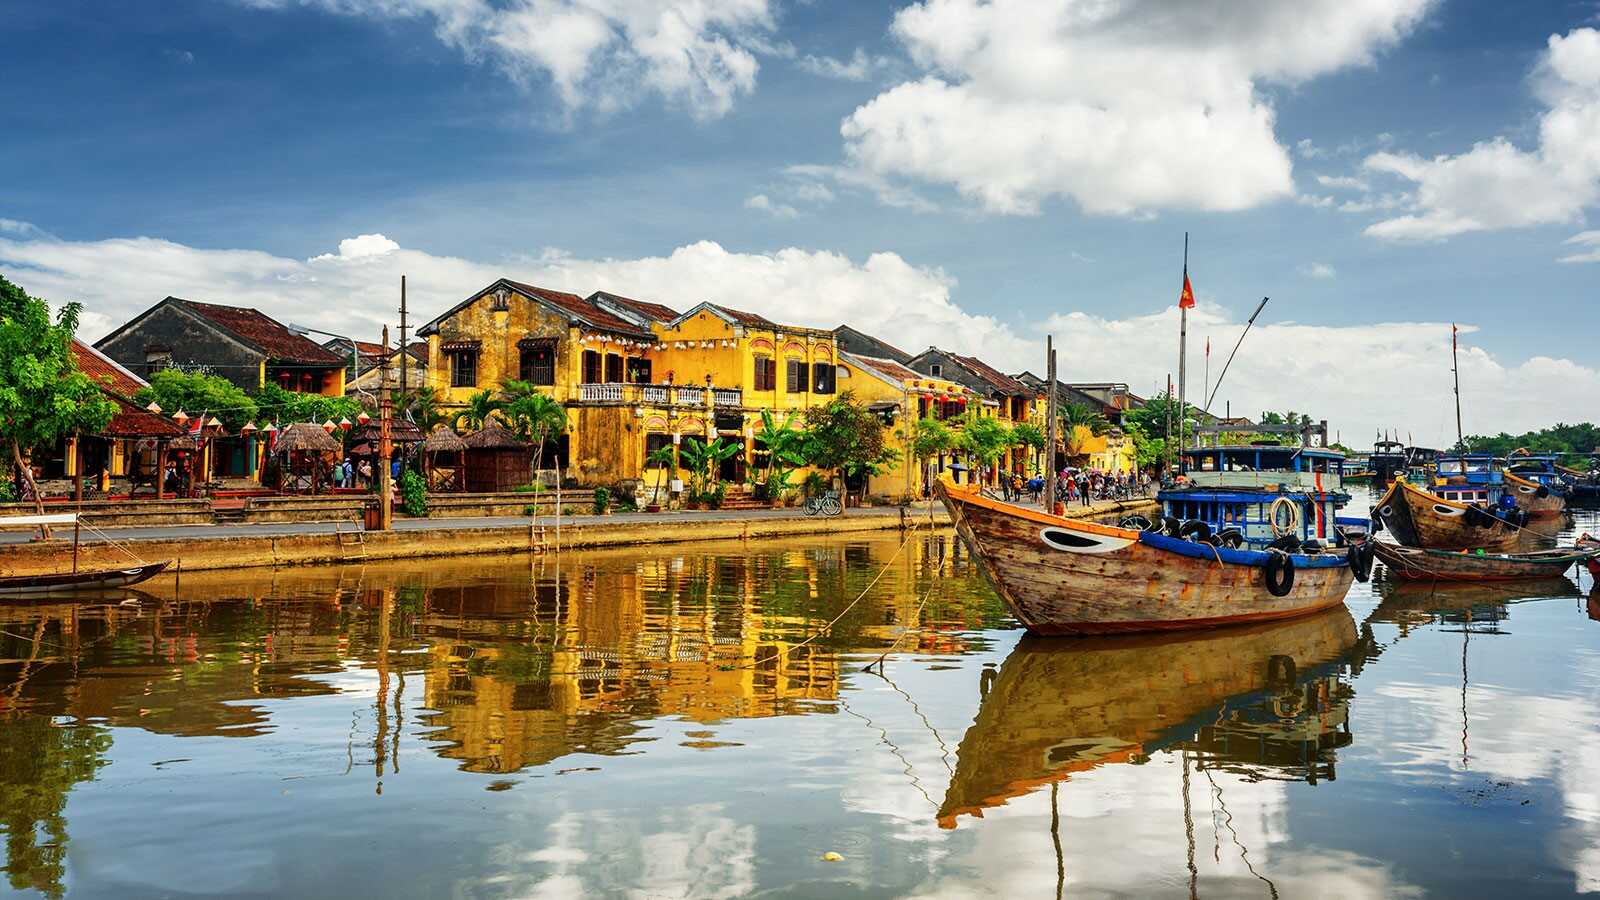 Du lịch Miền Trung - Quảng Ngãi - Lý Sơn - Huế 4 ngày bay từ Sài Gòn dịp Hè